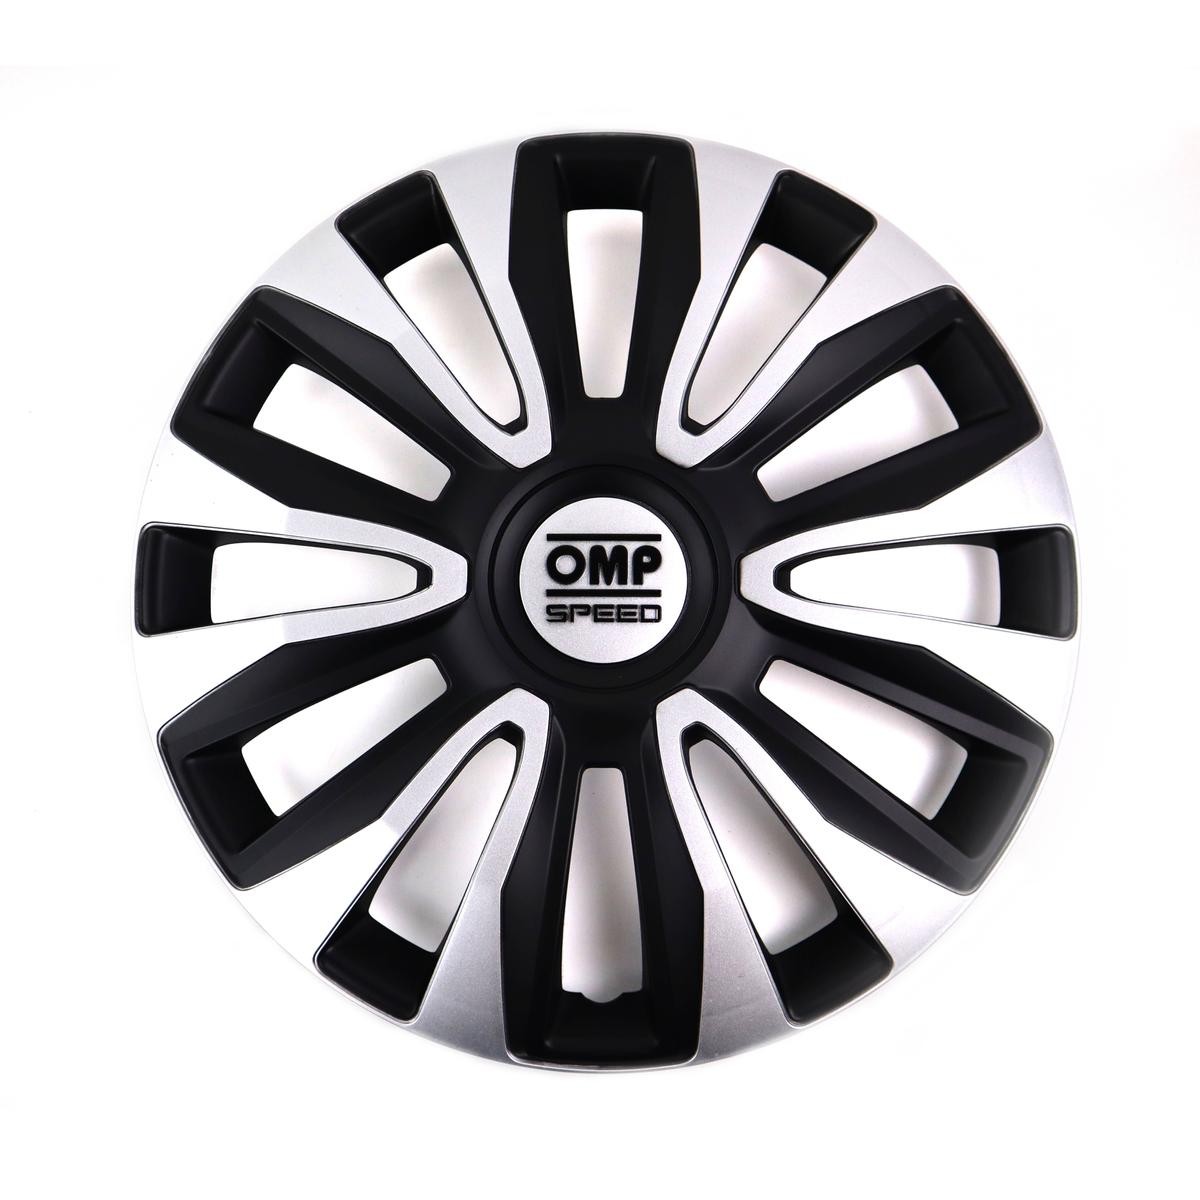 OMP OMPS07011412 Car wheel trims VW Golf 4 (1J1) 14 Inch black, silver